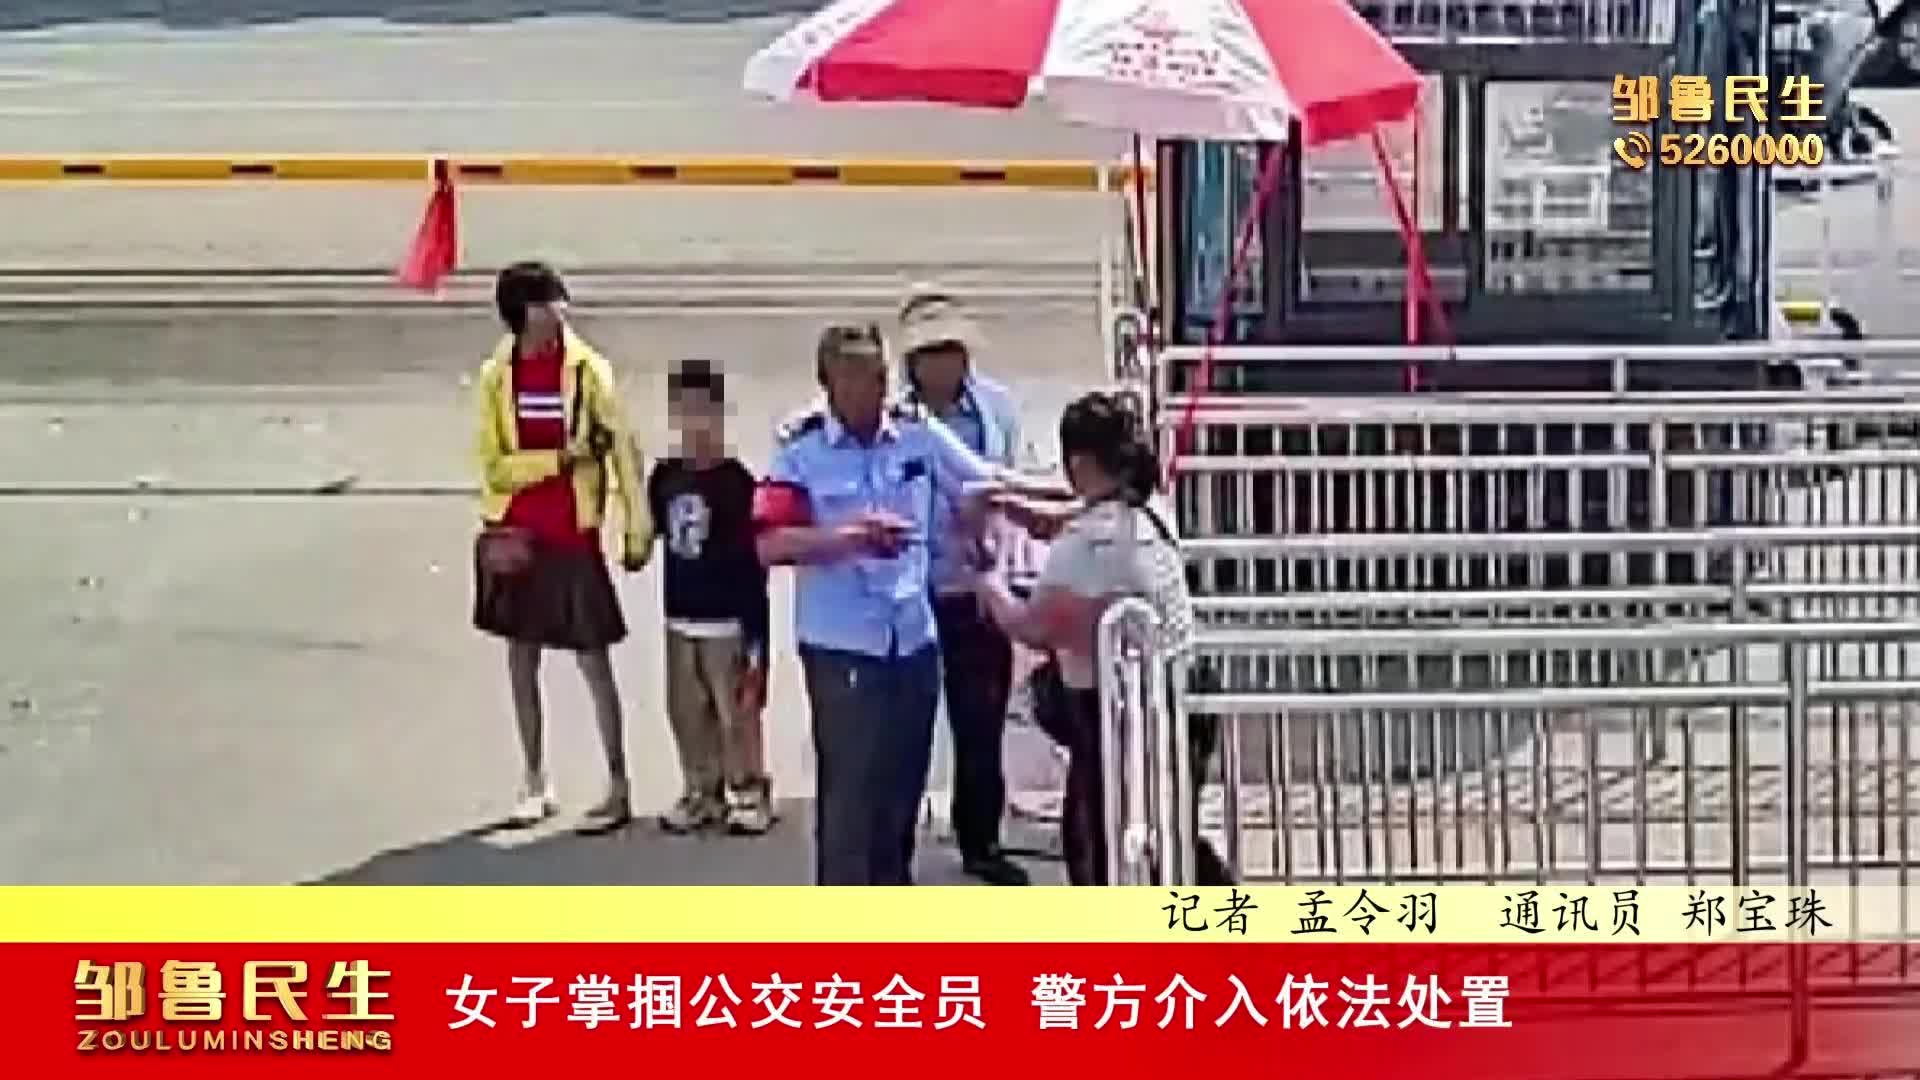 【视频新闻】女子掌掴公交安全员 警方介入依法处置